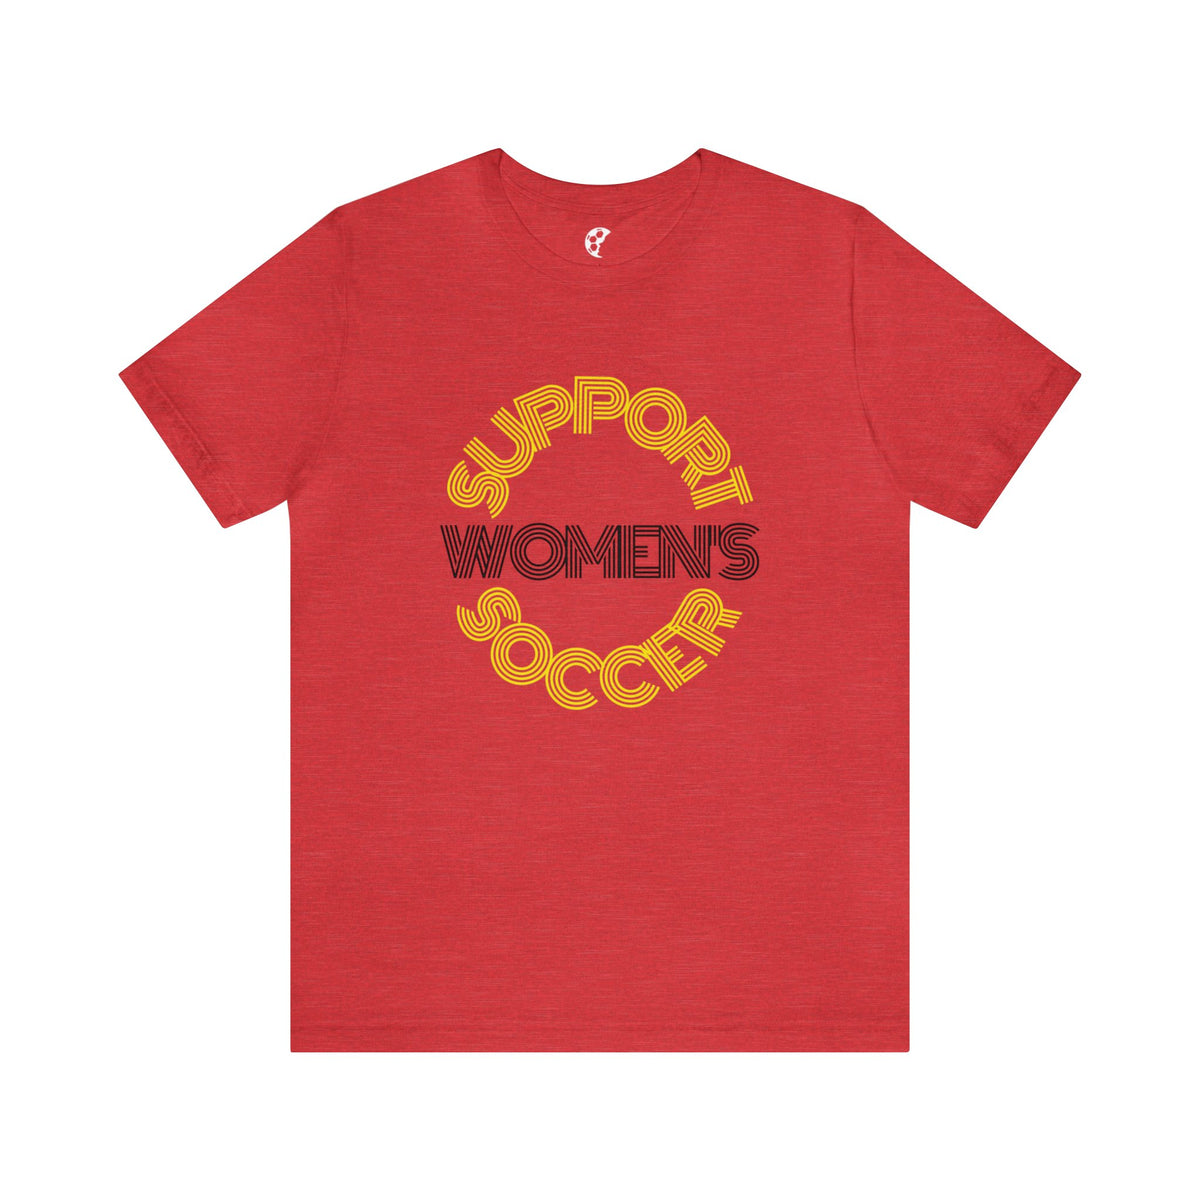 Support Women's Soccer Adult T-Shirt